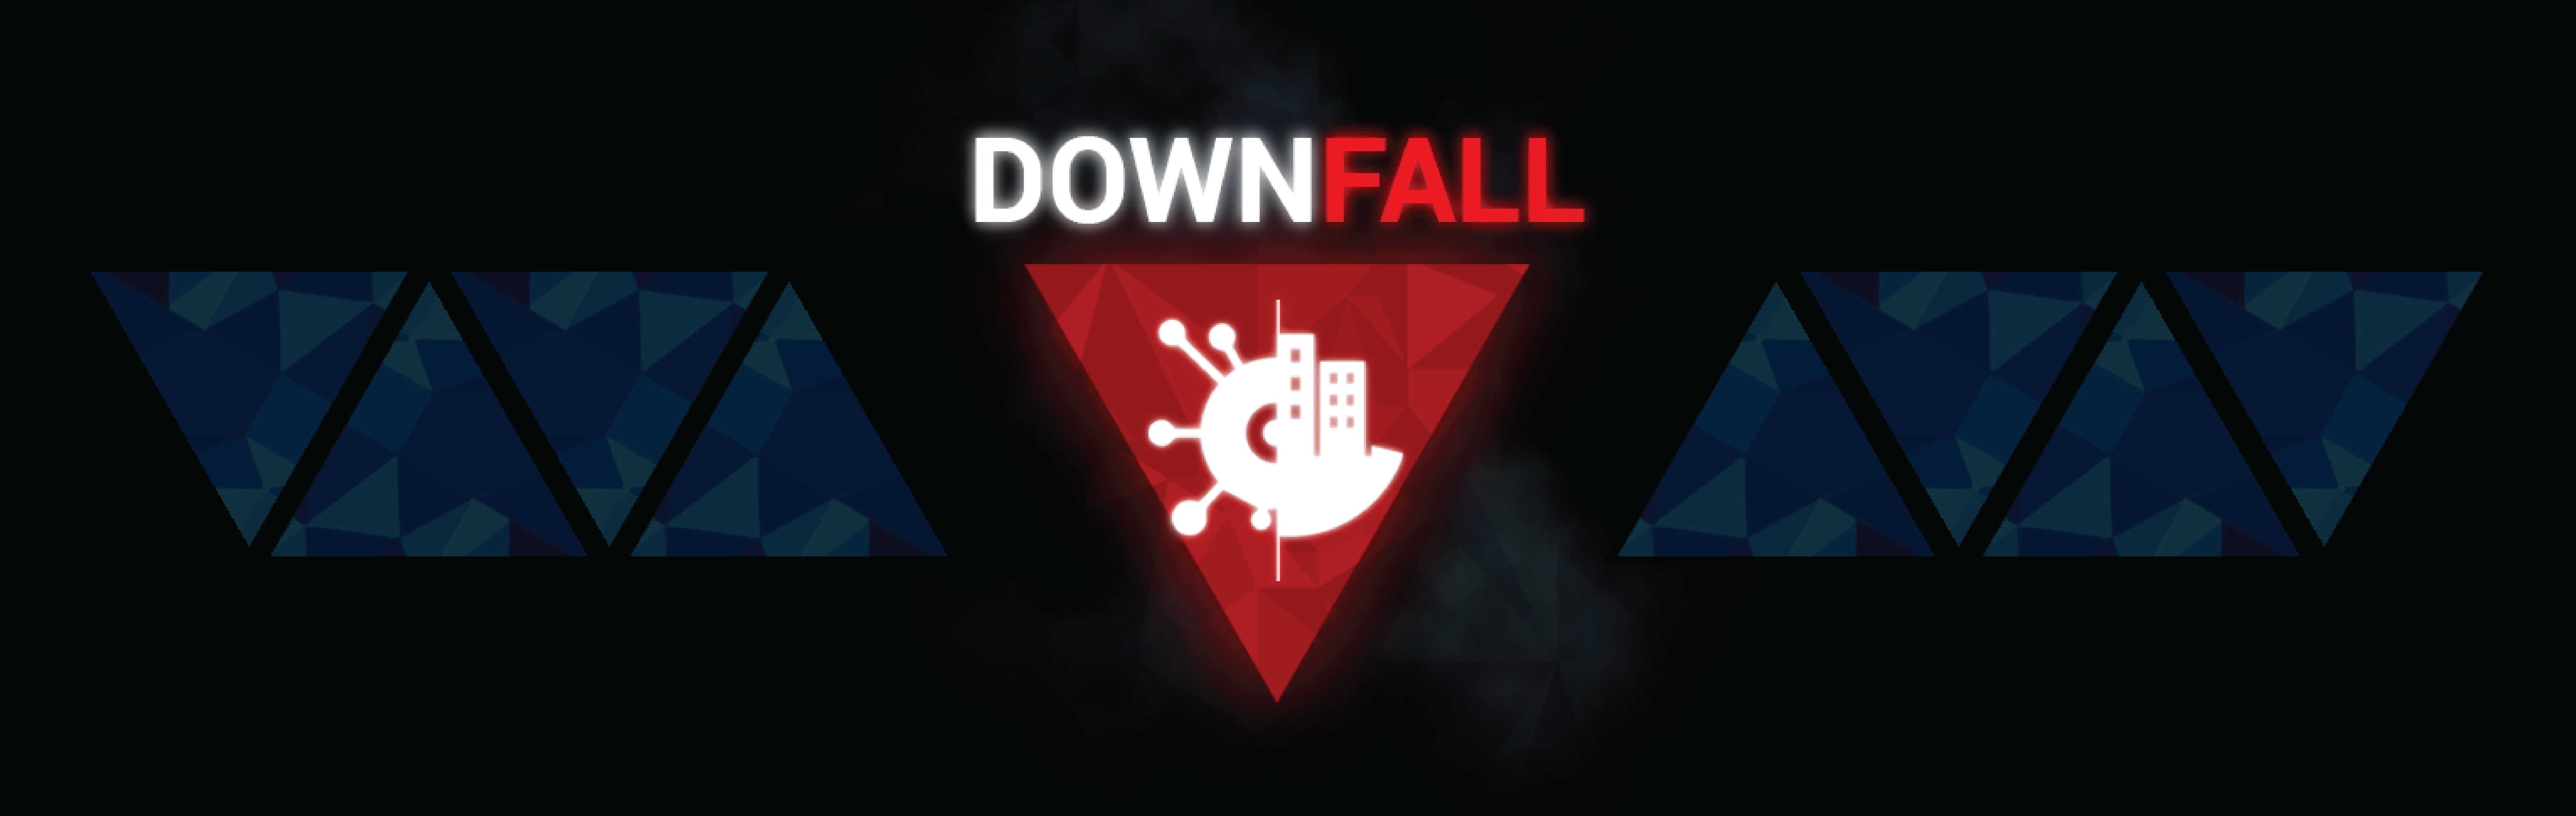 Downfall